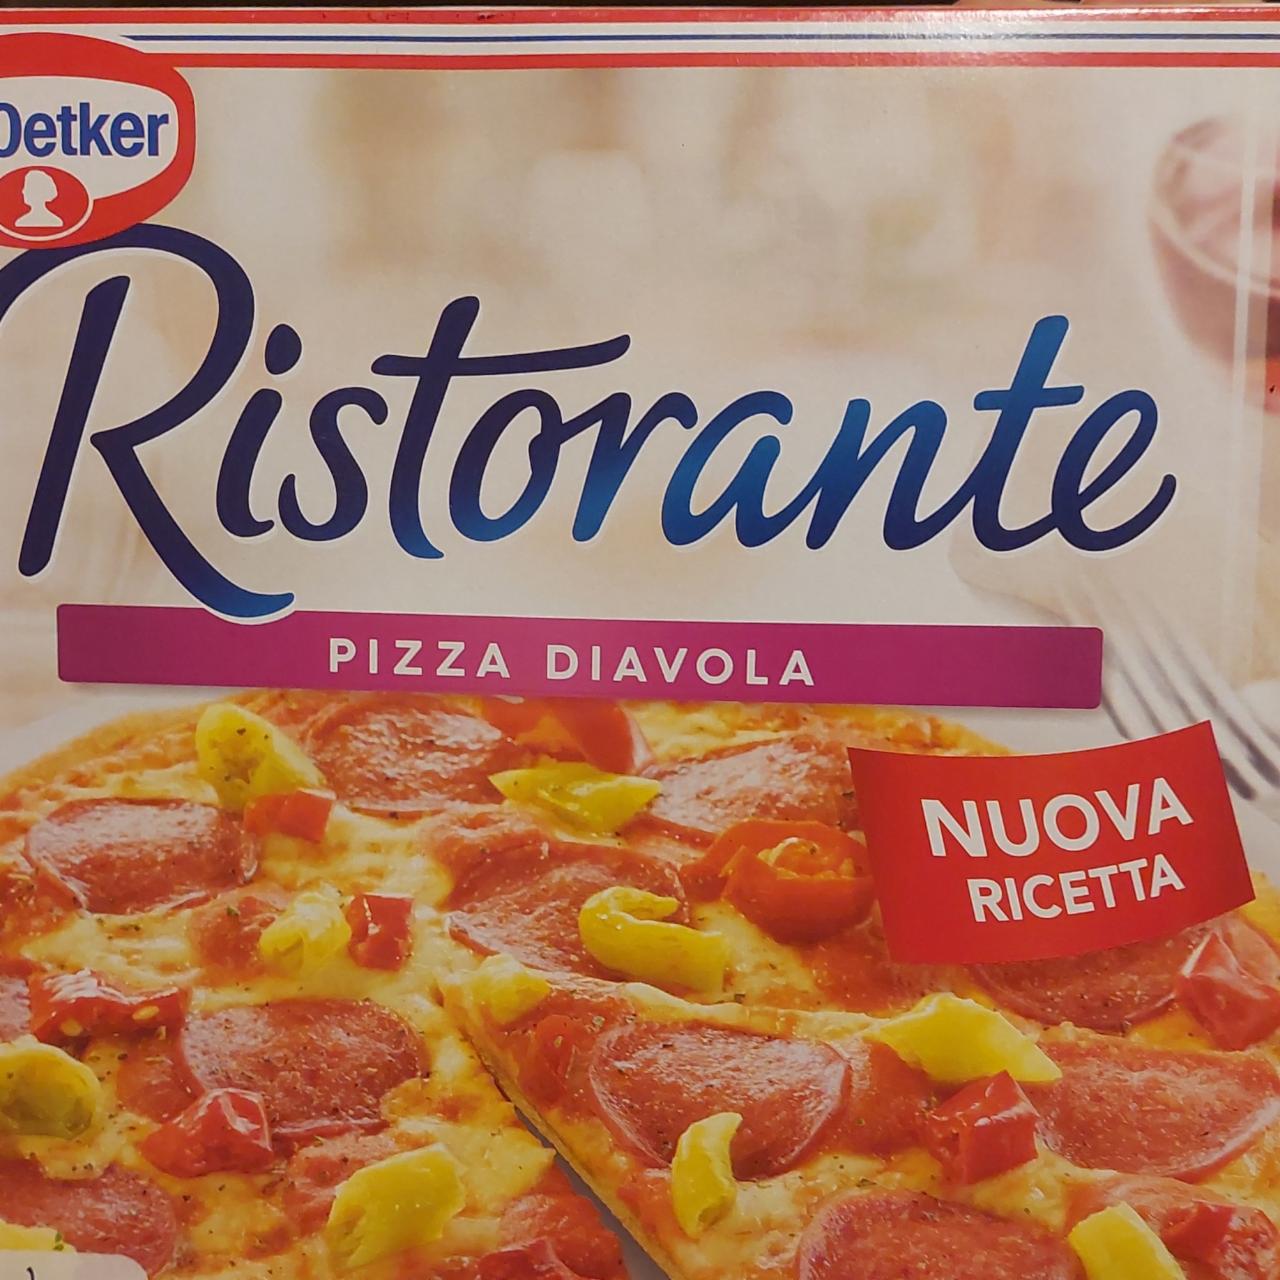 Képek - Ristorante pizza Diavola Nuova Ricetta Dr. Oetker